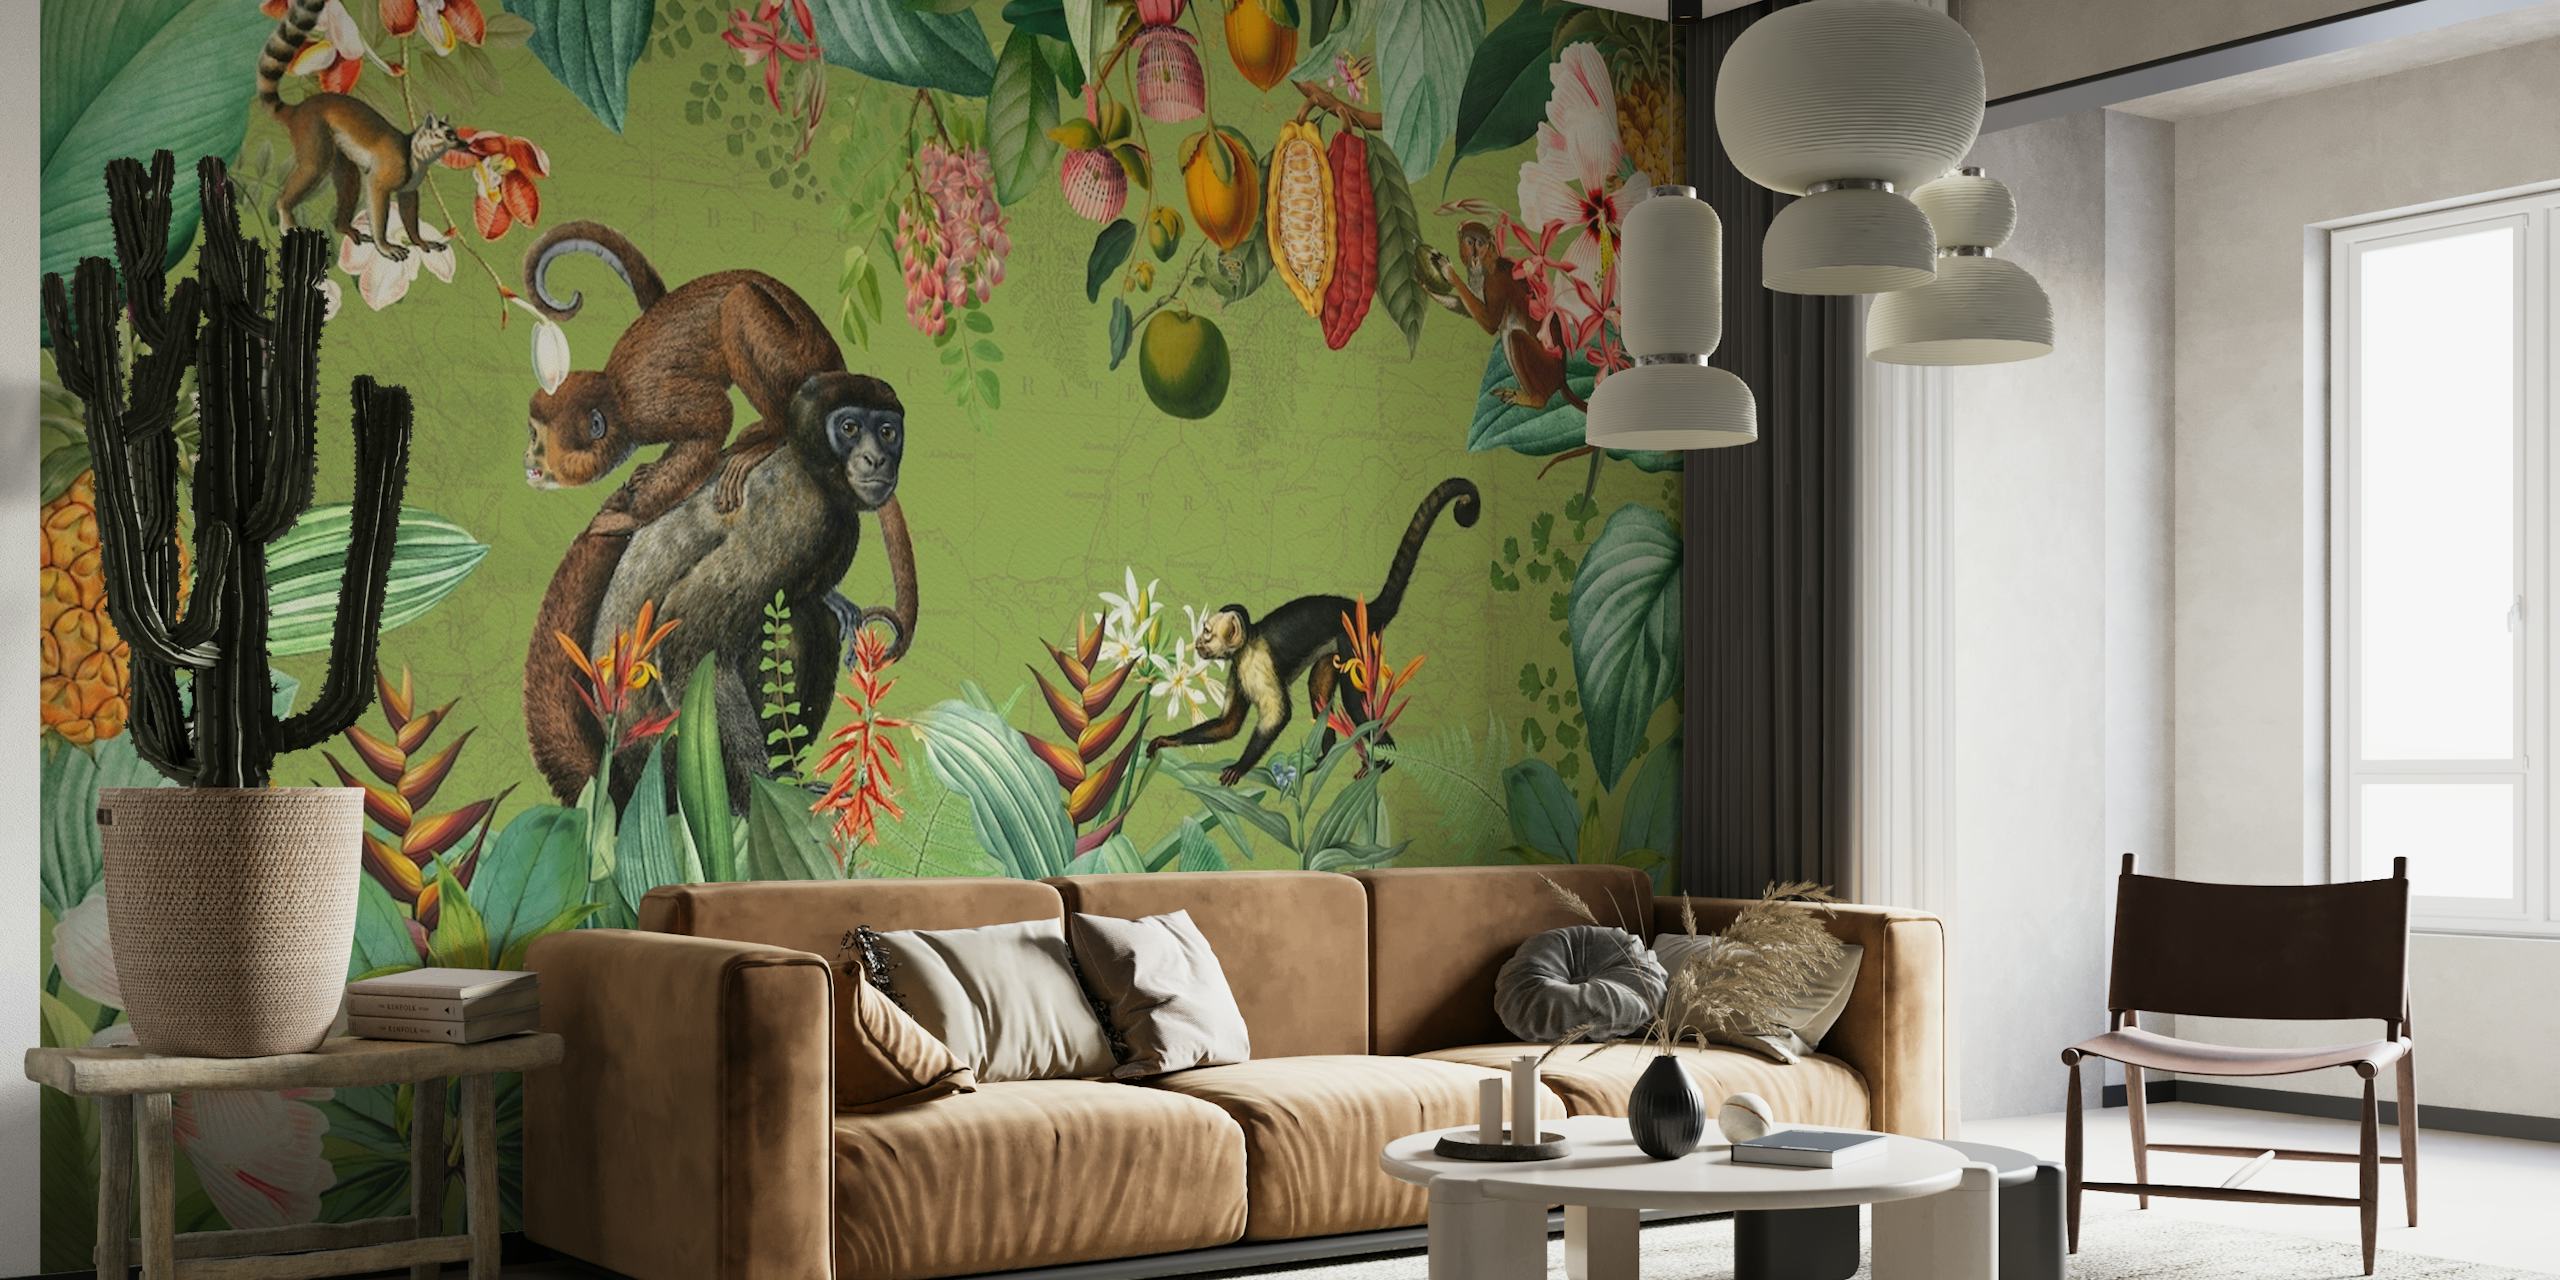 Une fresque murale de style vintage représentant des singes et des plantes tropicales dans un décor de jungle africaine